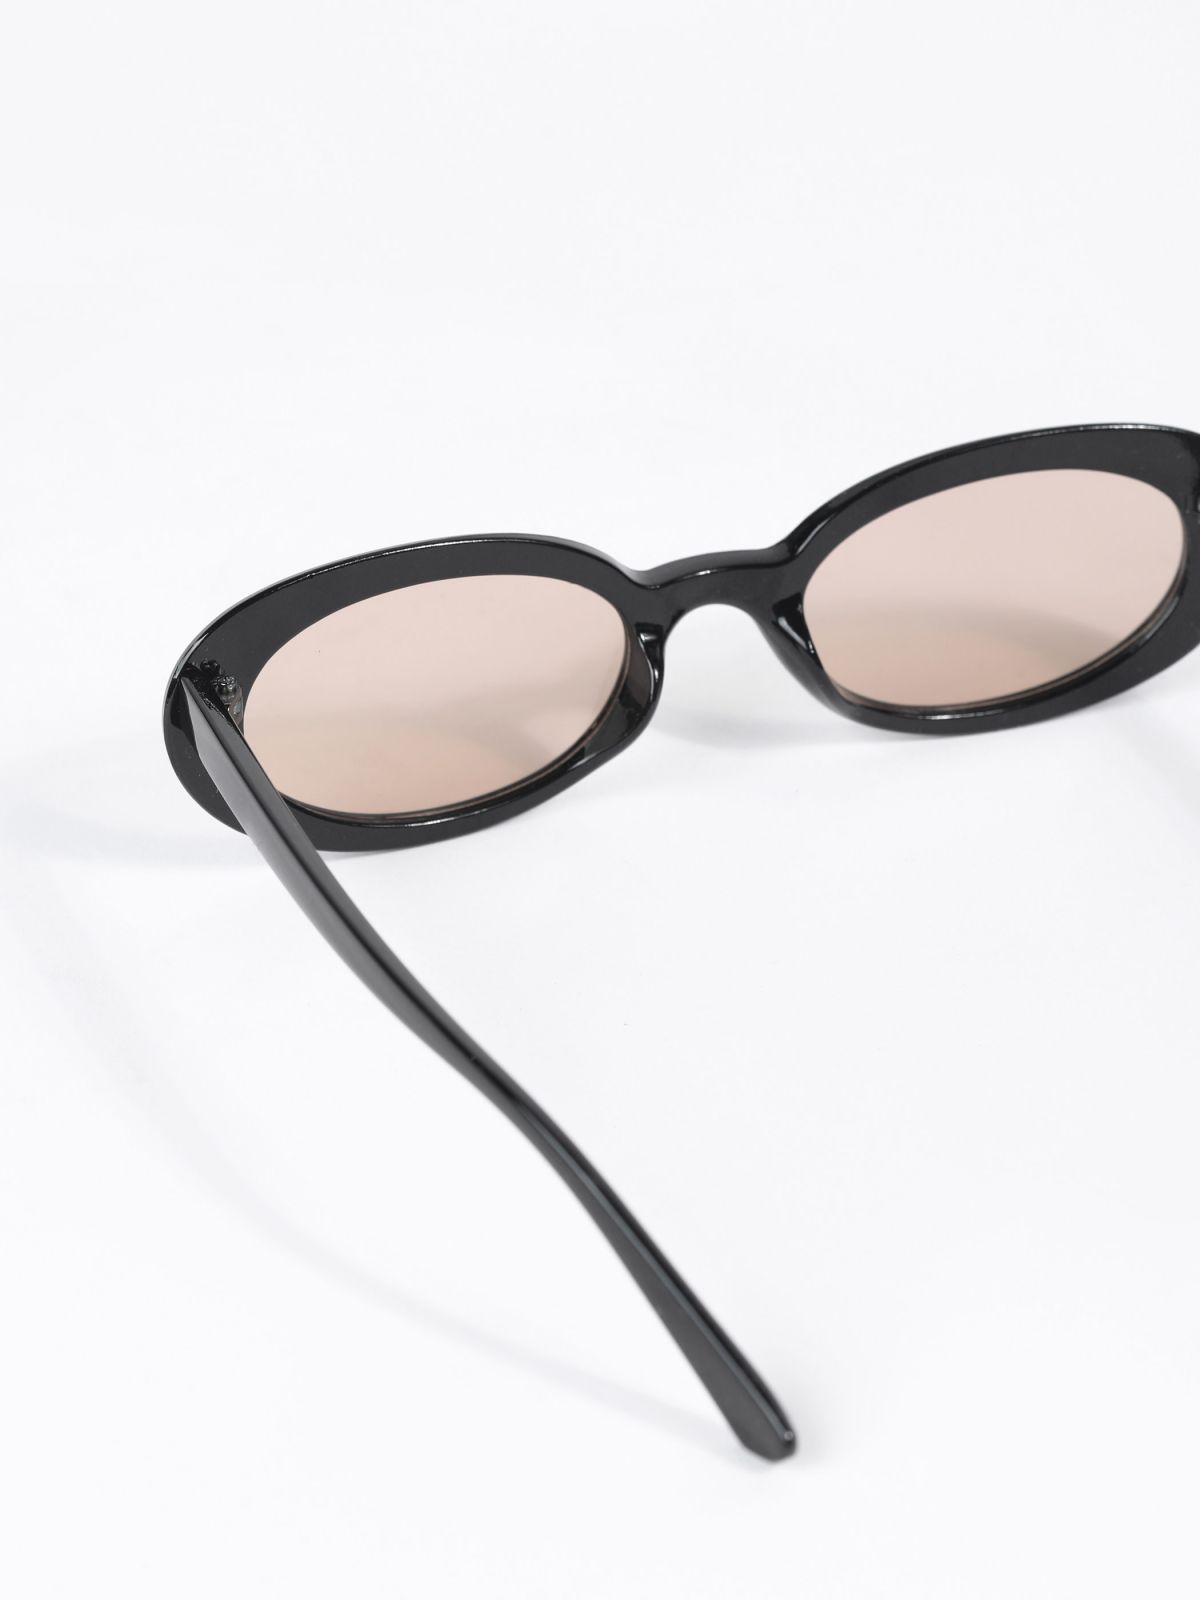  משקפי שמש אובלים / TX Eyewear Collection של TERMINAL X